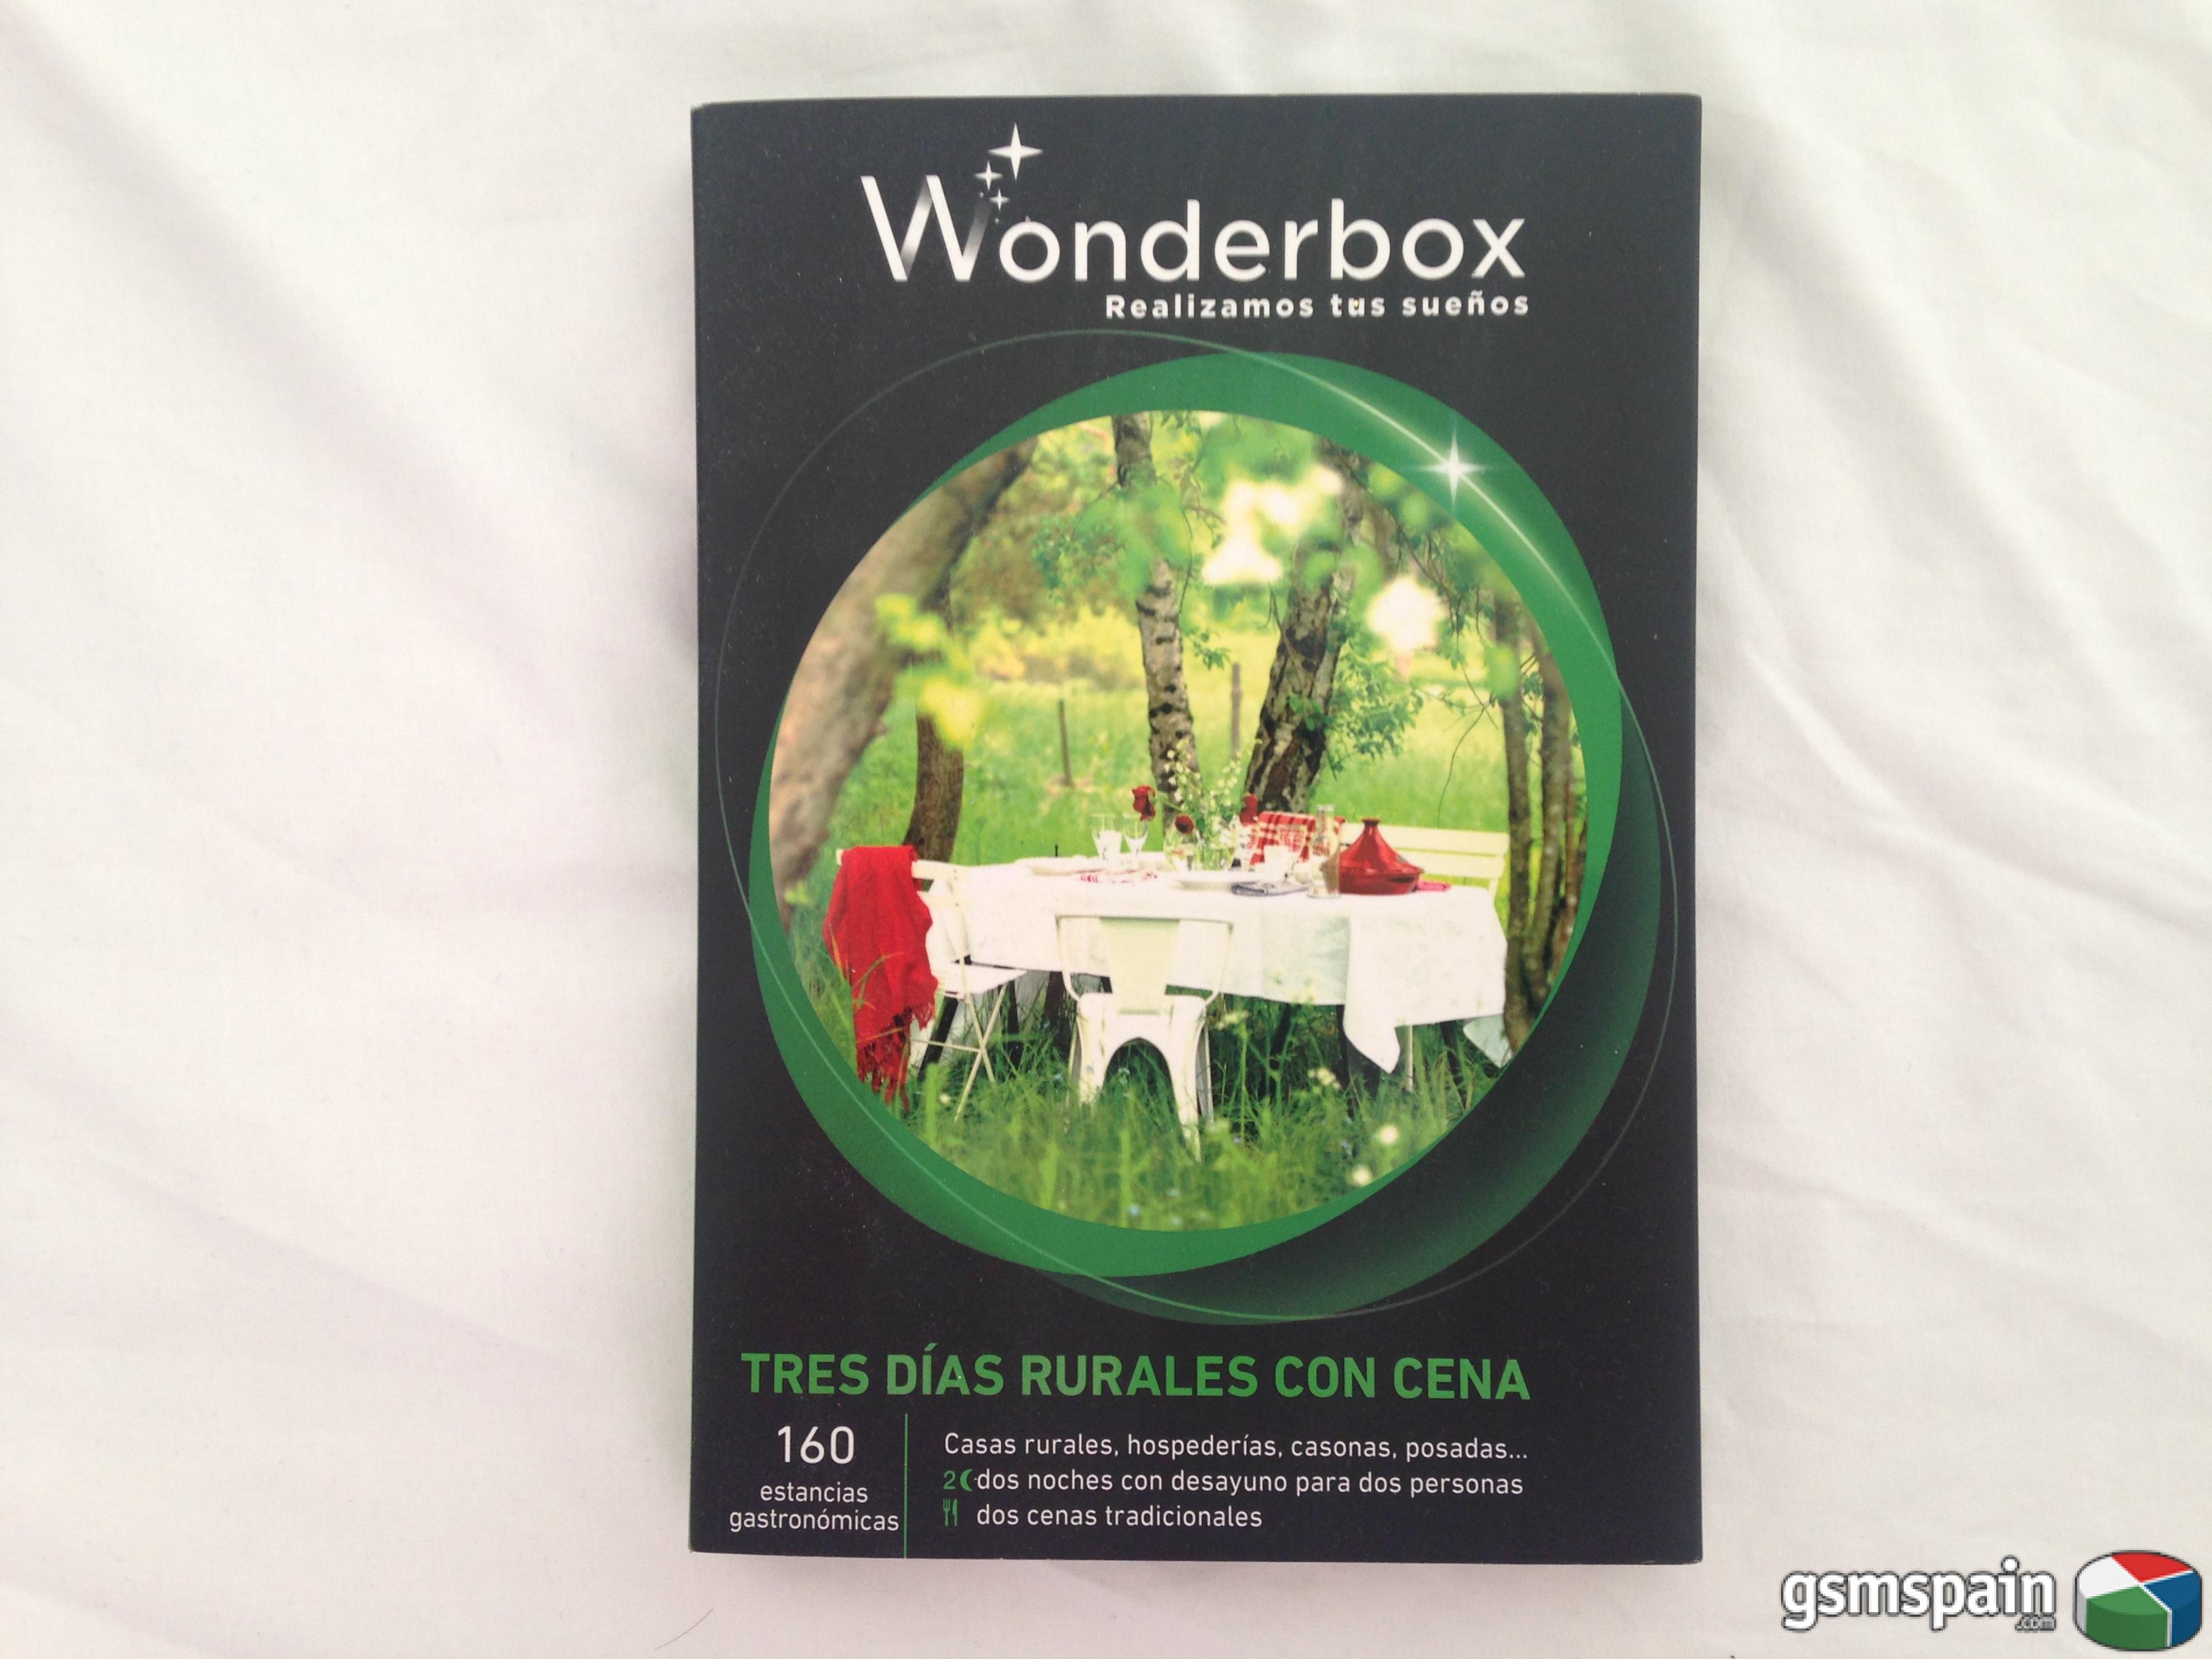 VENDO] Cajas Wonderbox/Smartbox para regalar sensaciones - Estancias  rurales/cenas